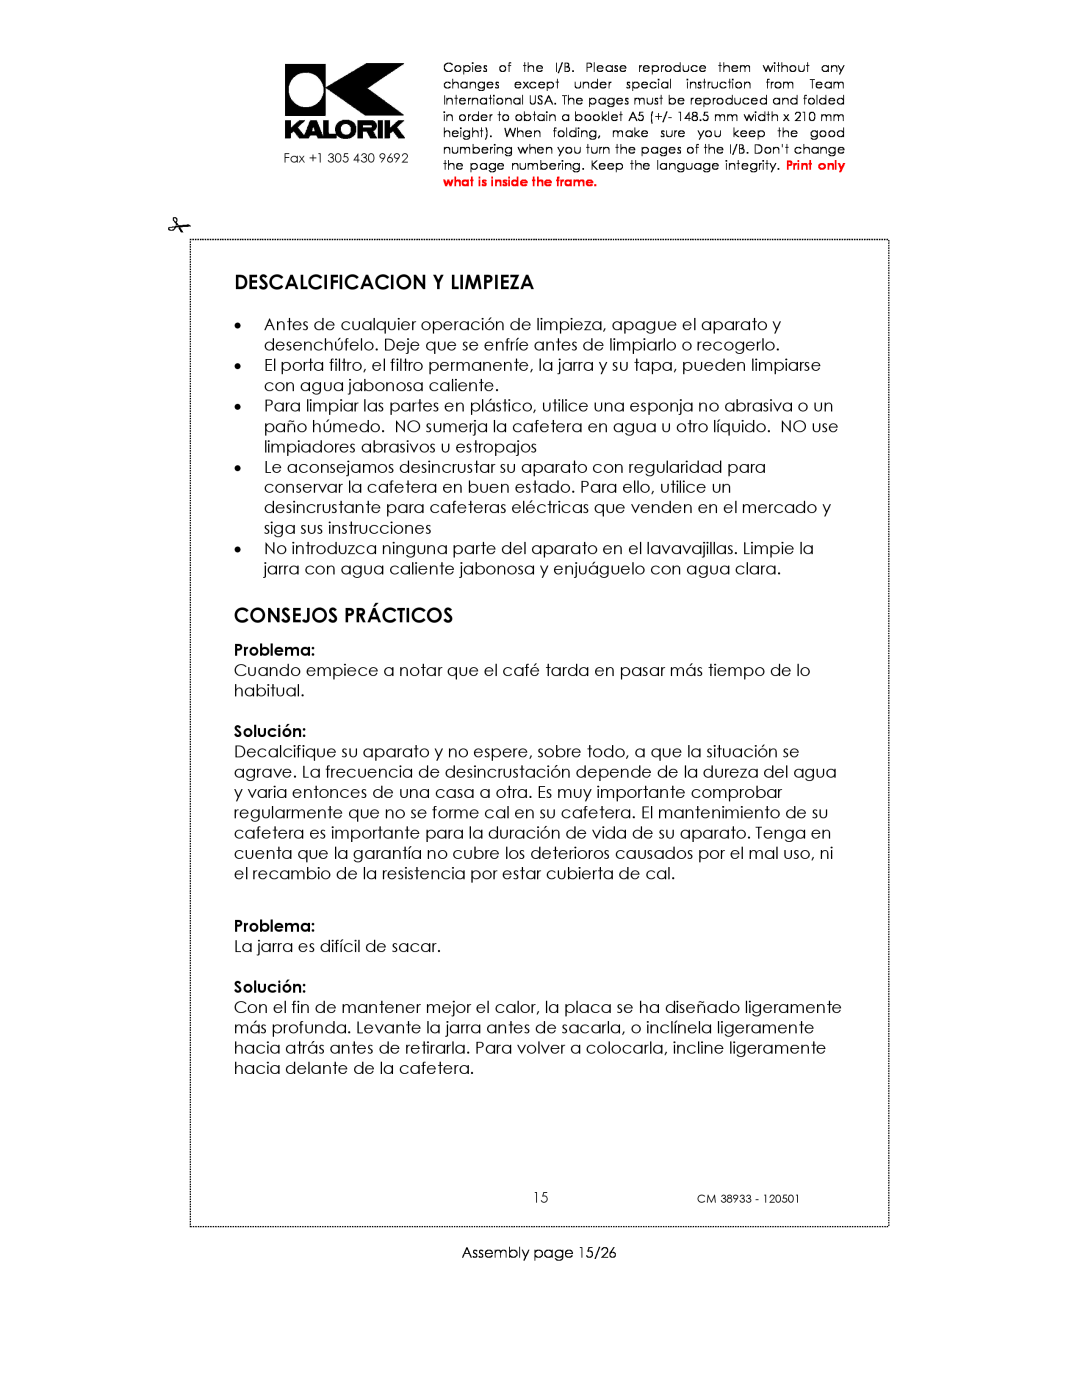 Kalorik CM 38933 manual Descalcificacion Y Limpieza, Consejos Prácticos, Problema, Solución 